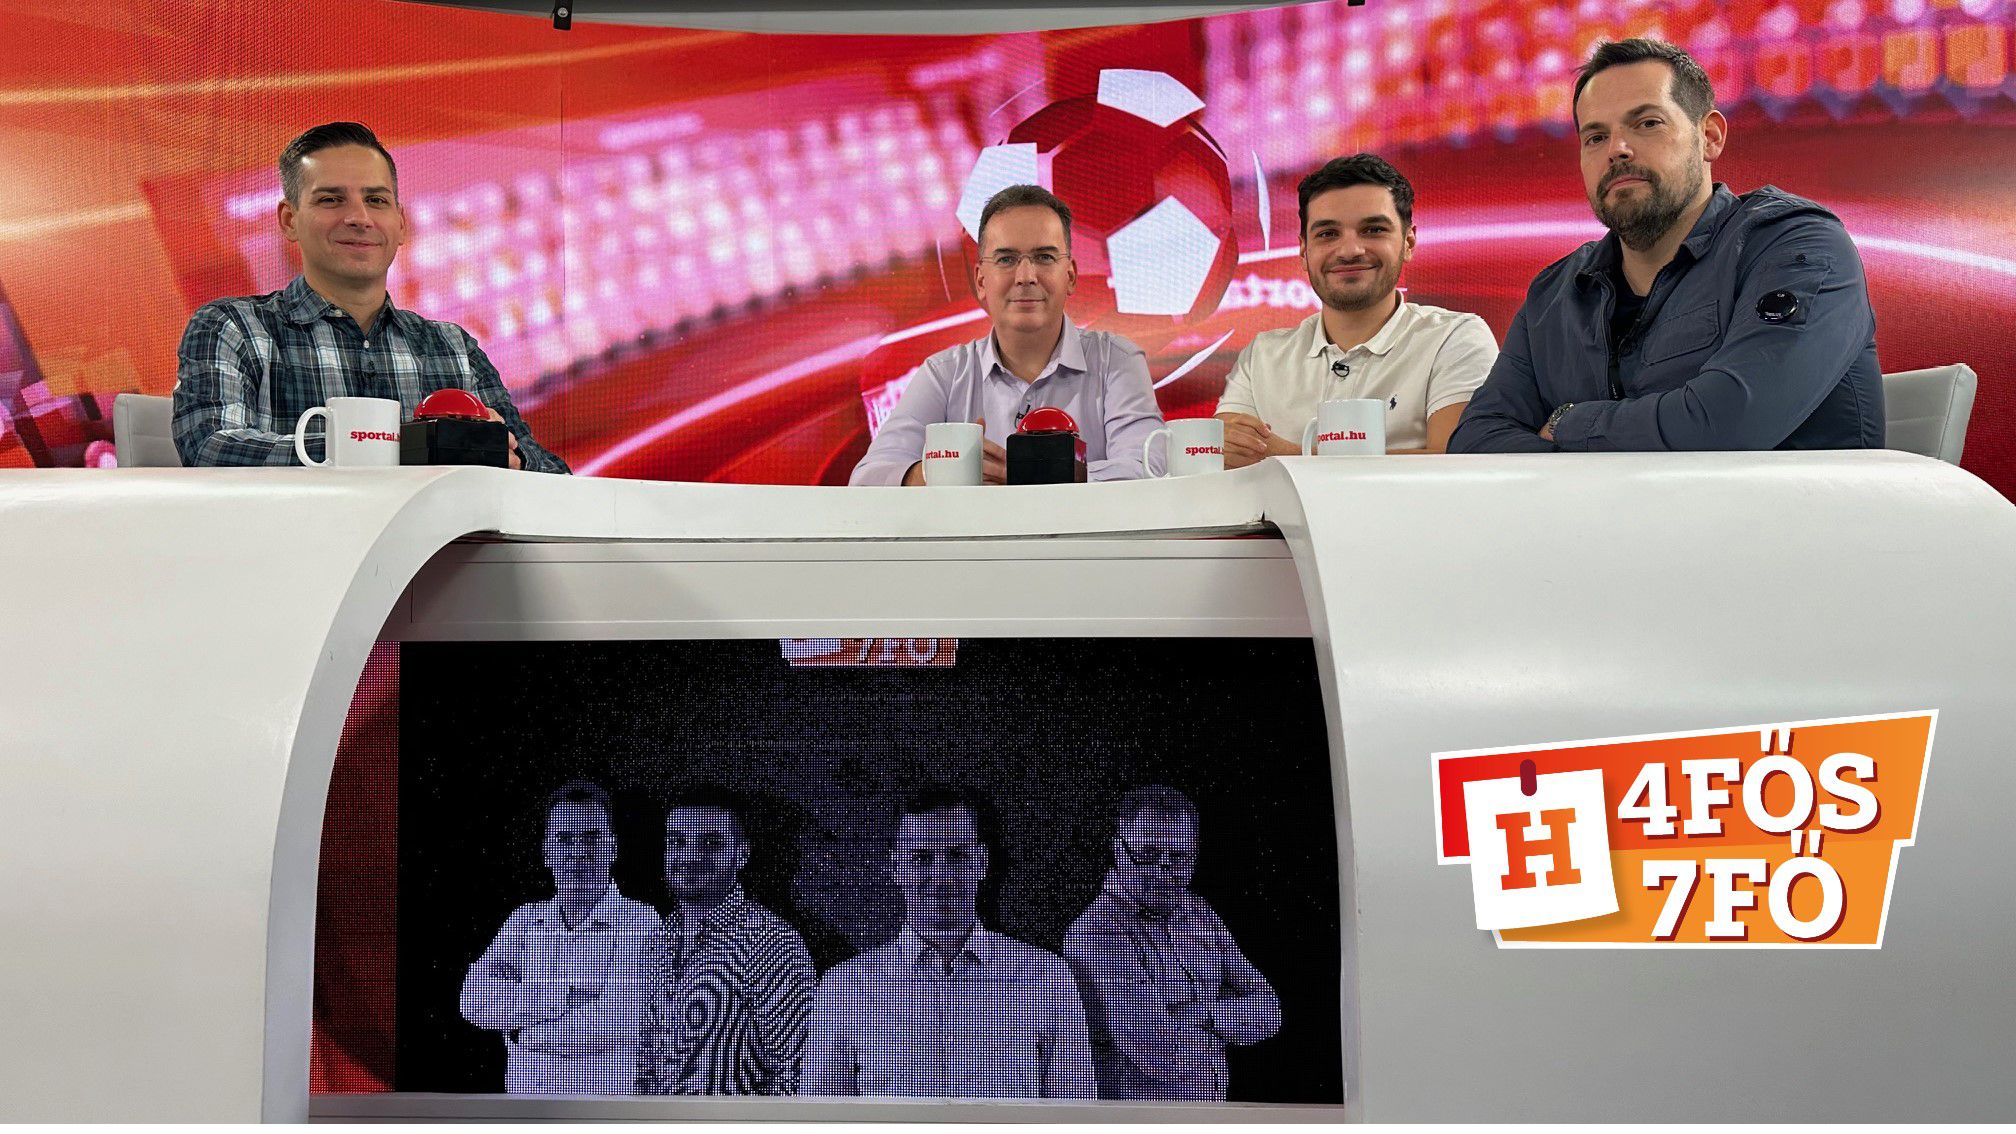 A Sportál Tv stúdiójában: Cselleng Ádám, Kecskés István, Cseh Benjámin és Filippov Gergely